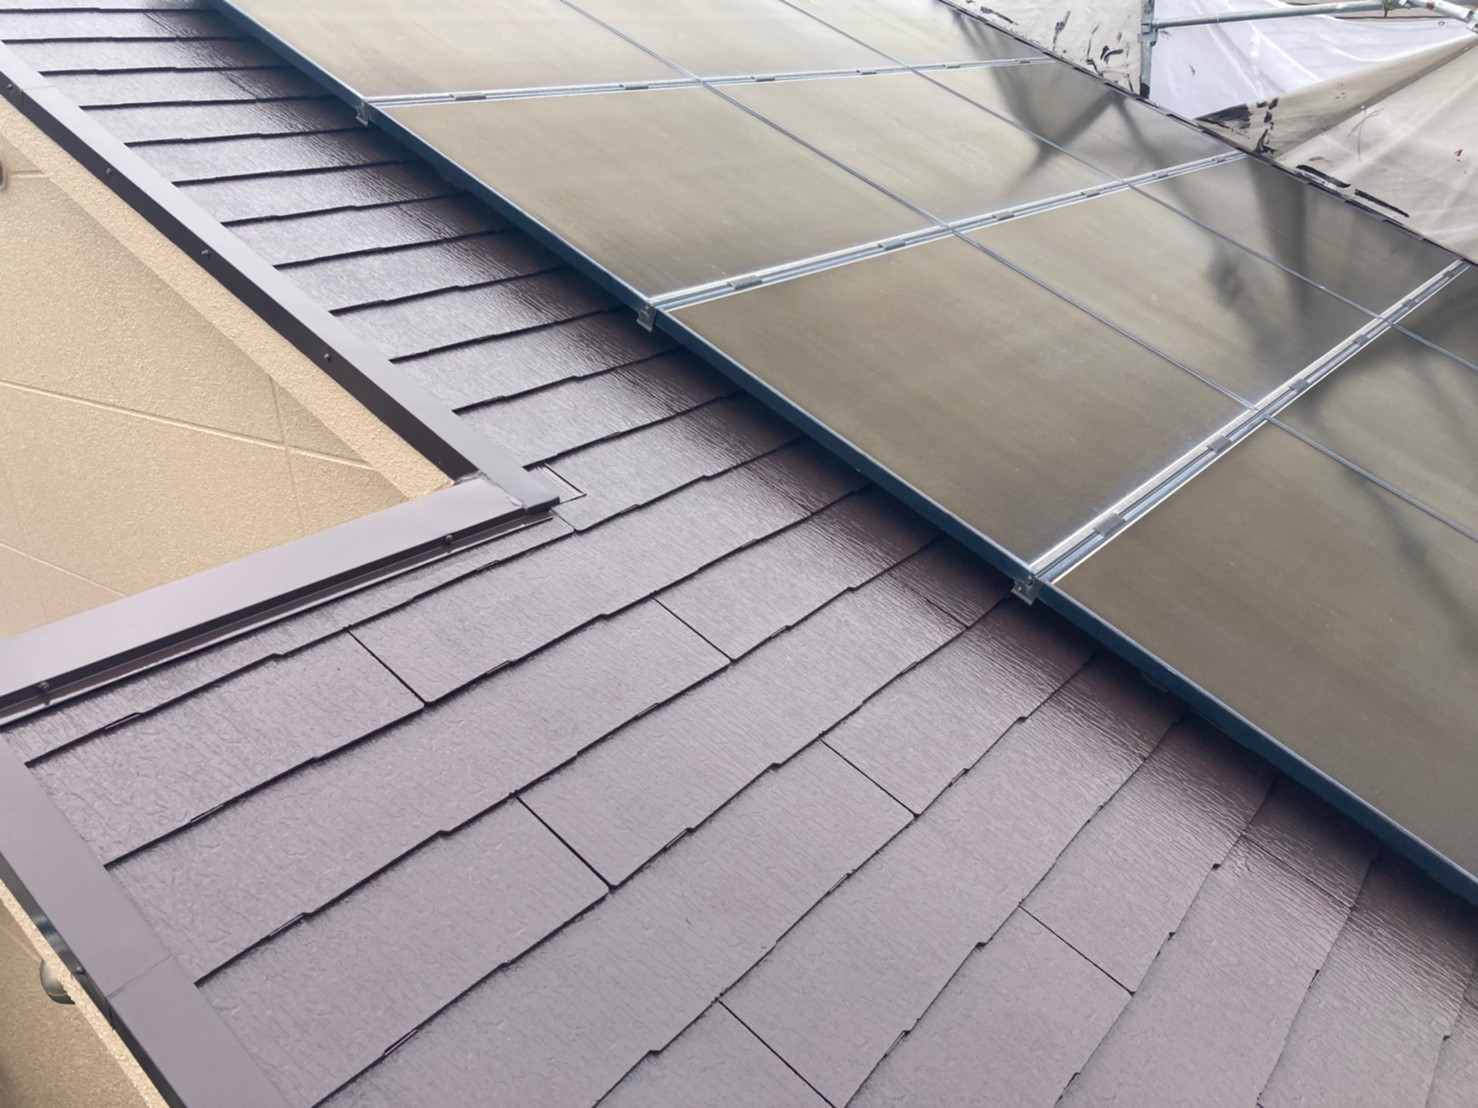 最後にタッチアップを行い完了です。
今回は屋根の上に太陽光が乗っていた為、屋根が見えている部分のみ塗装を行いました。